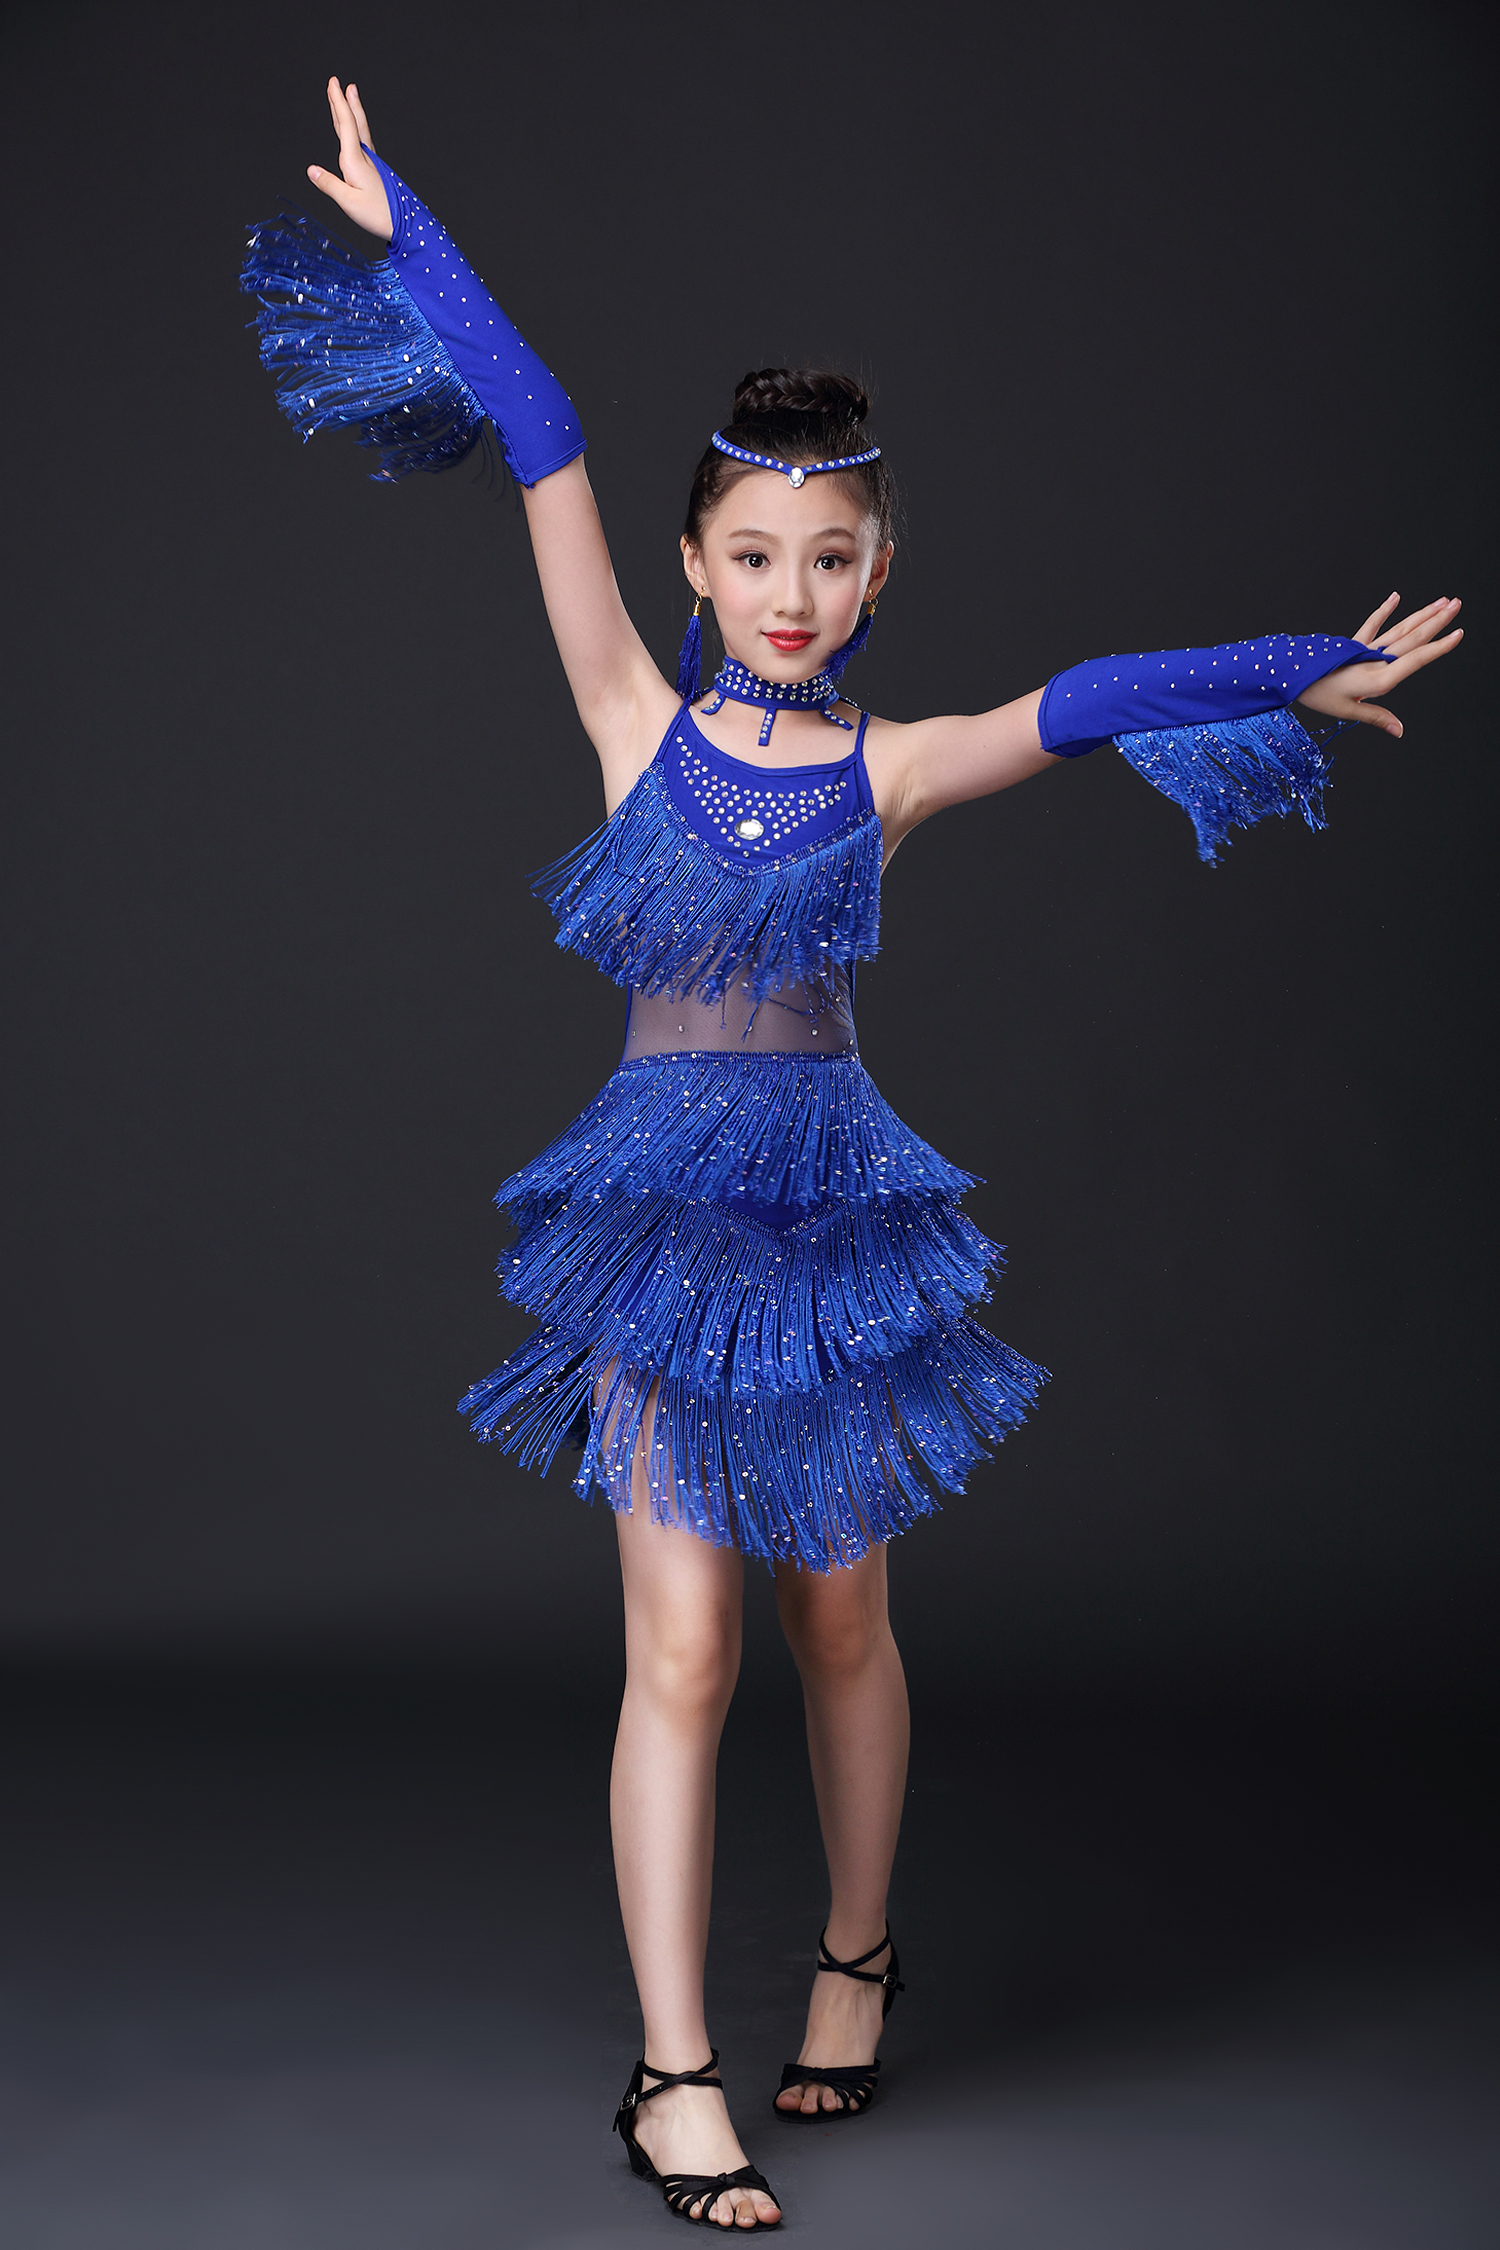 儿童拉丁舞服装少儿女童拉丁舞裙演出表演比赛服装新款亮片钻流苏